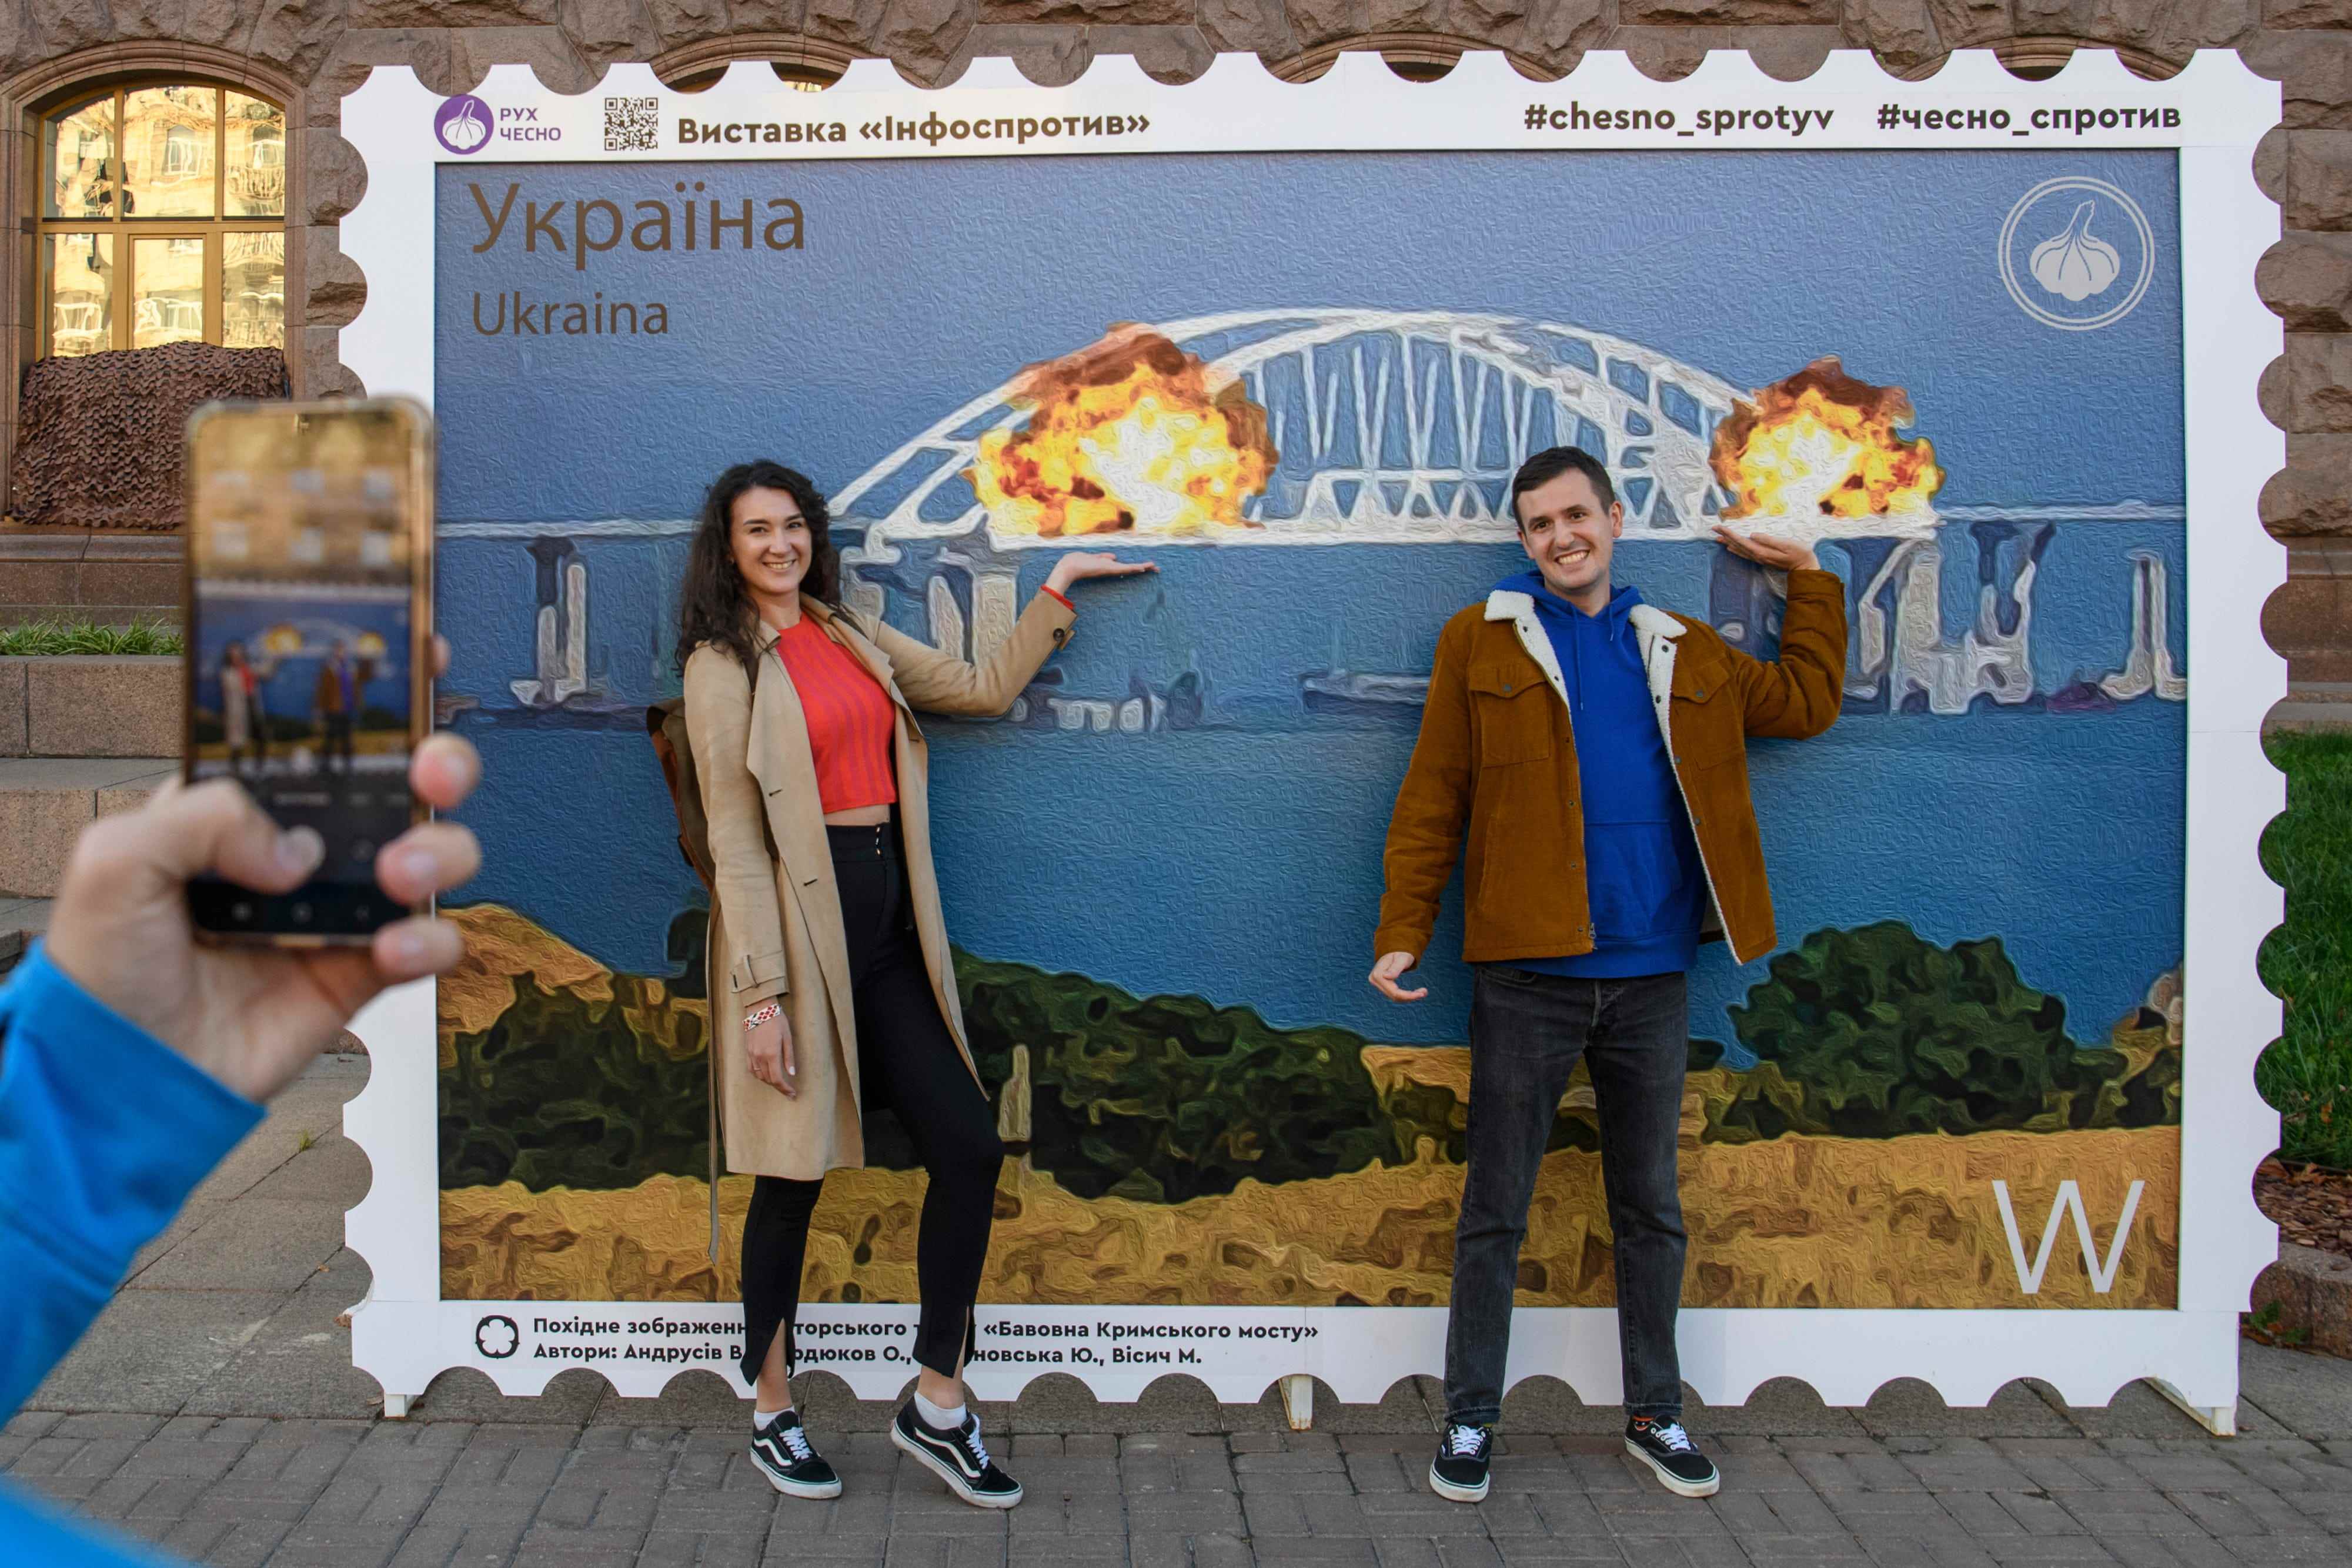 Menschen posieren für Fotos und machen Selfies vor der großen Plakatform einer Briefmarke, die die brennende Krim-Kertsch-Brücke in Kiew, Ukraine, am 8. Oktober 2022 darstellt.